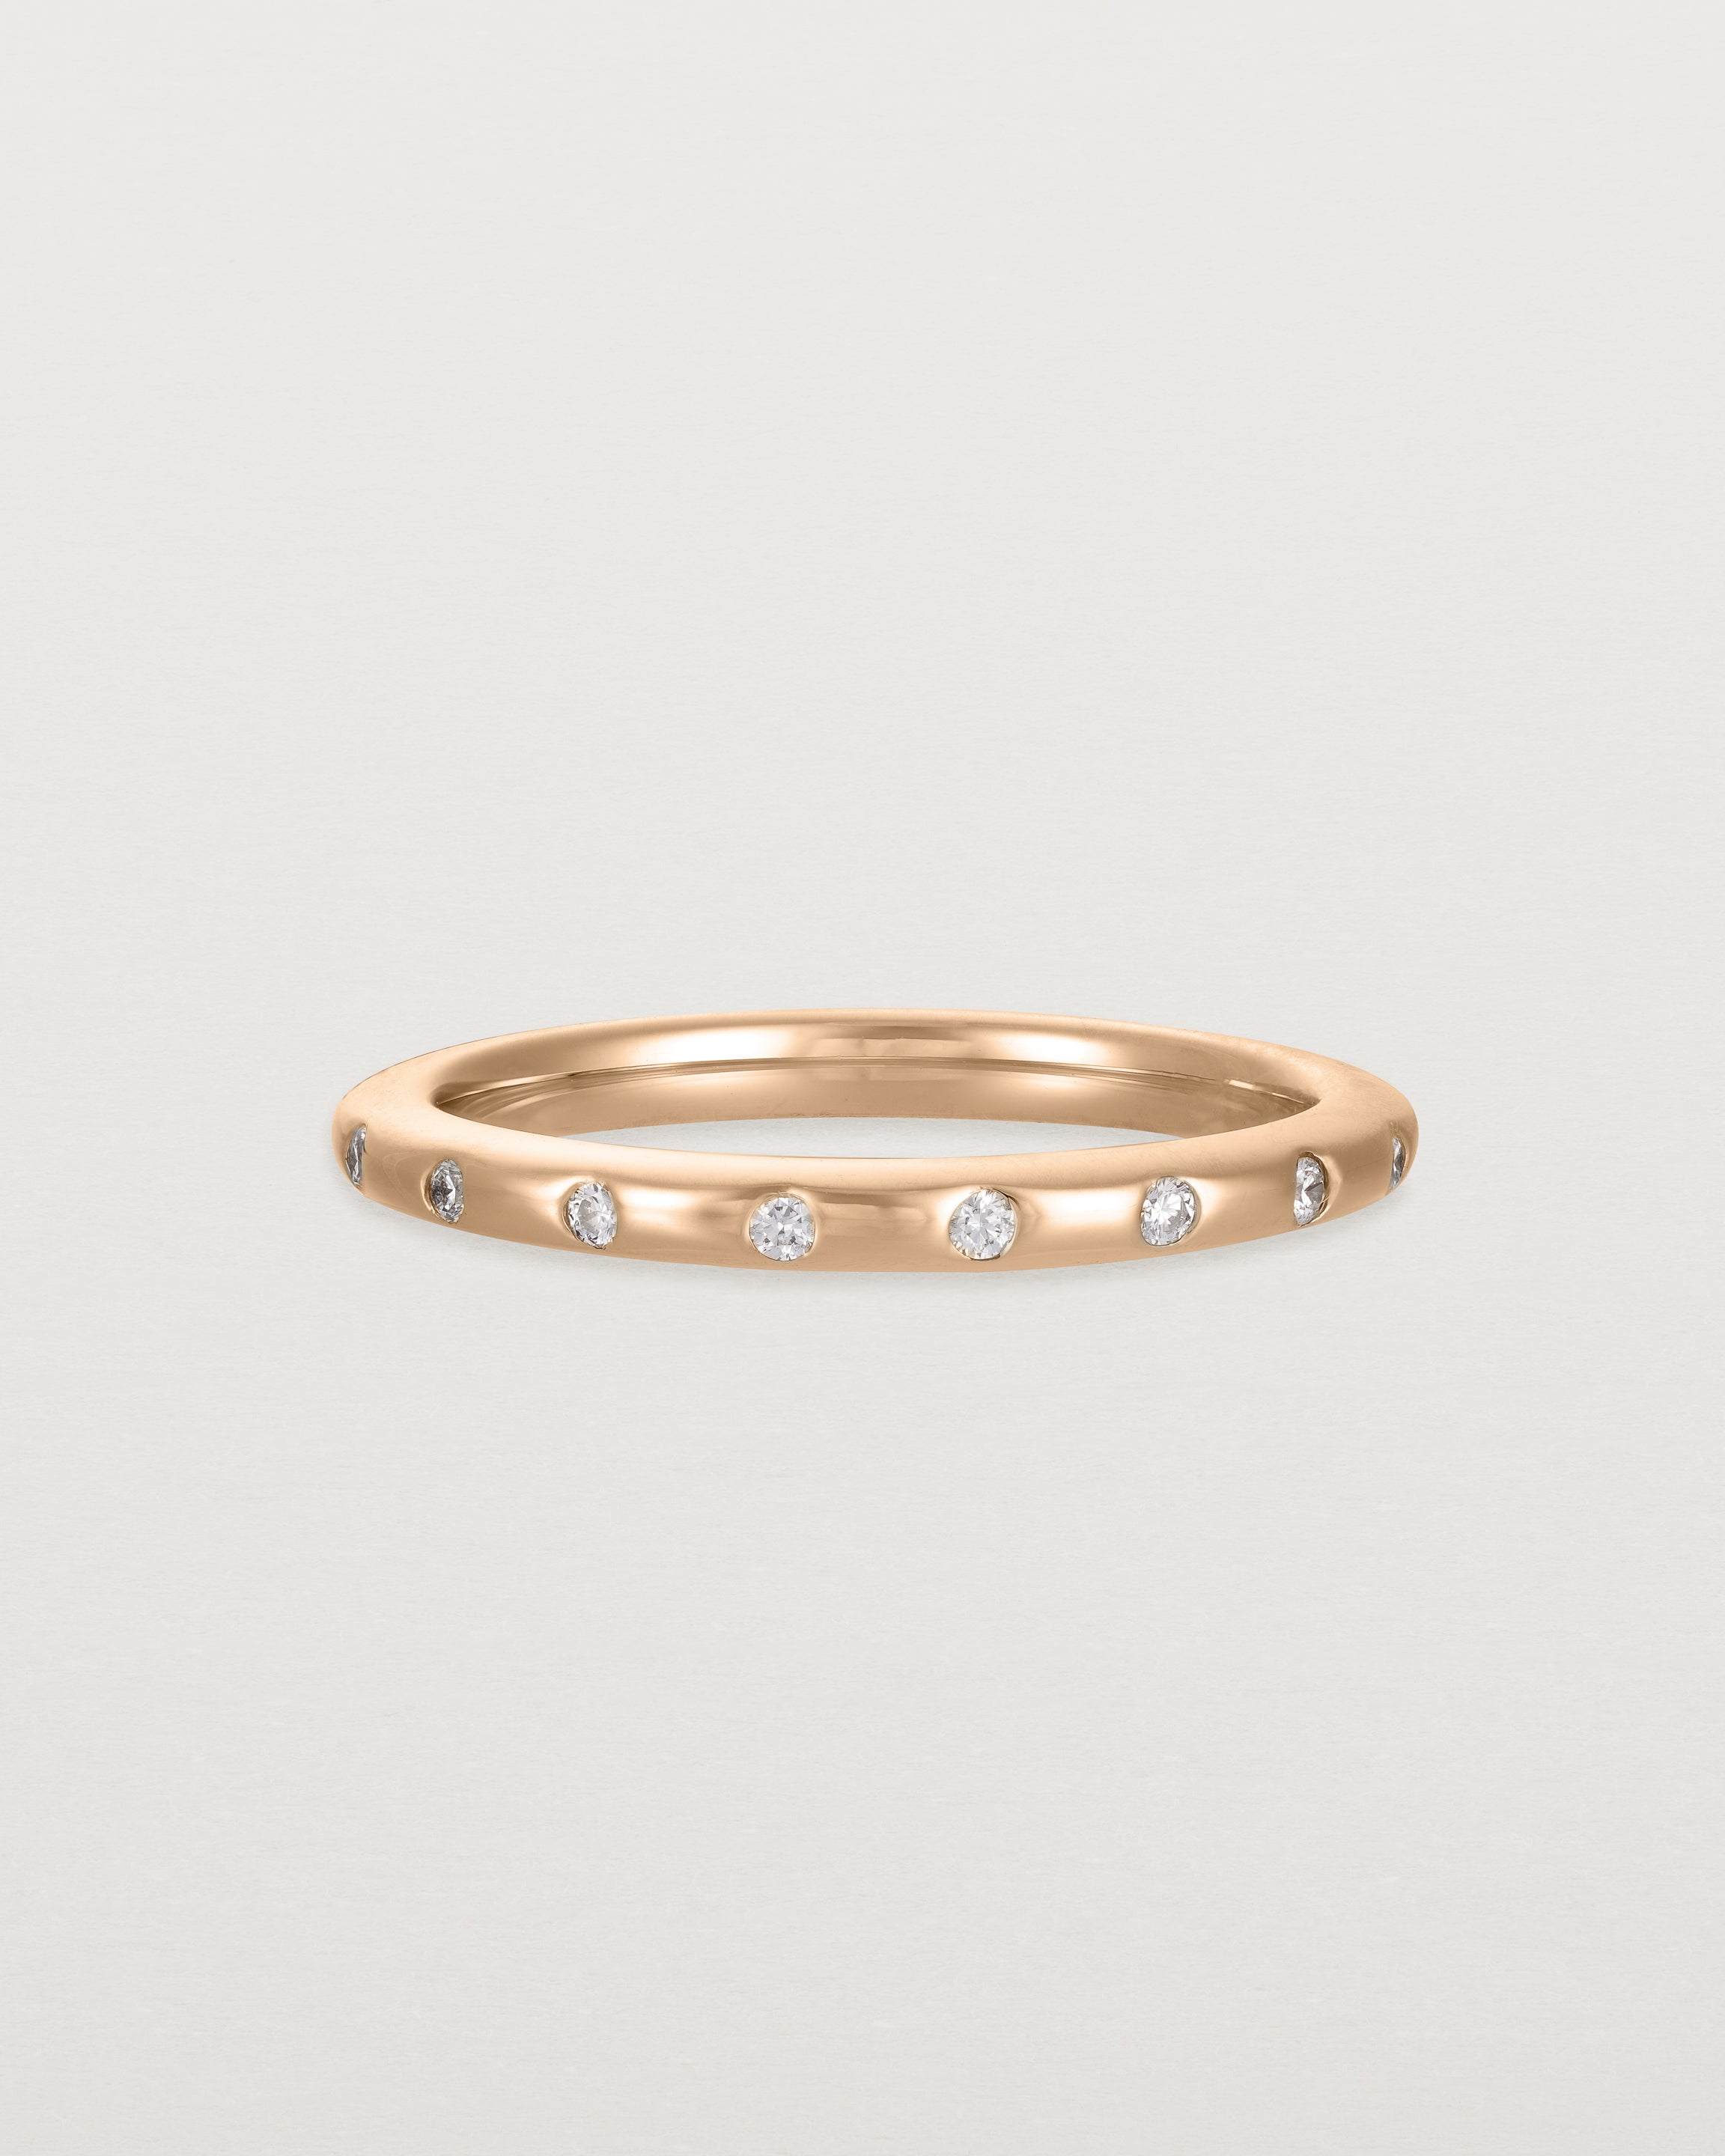 Buy Appealing Diamond Jewellery Set in 14KT Rose Gold Online